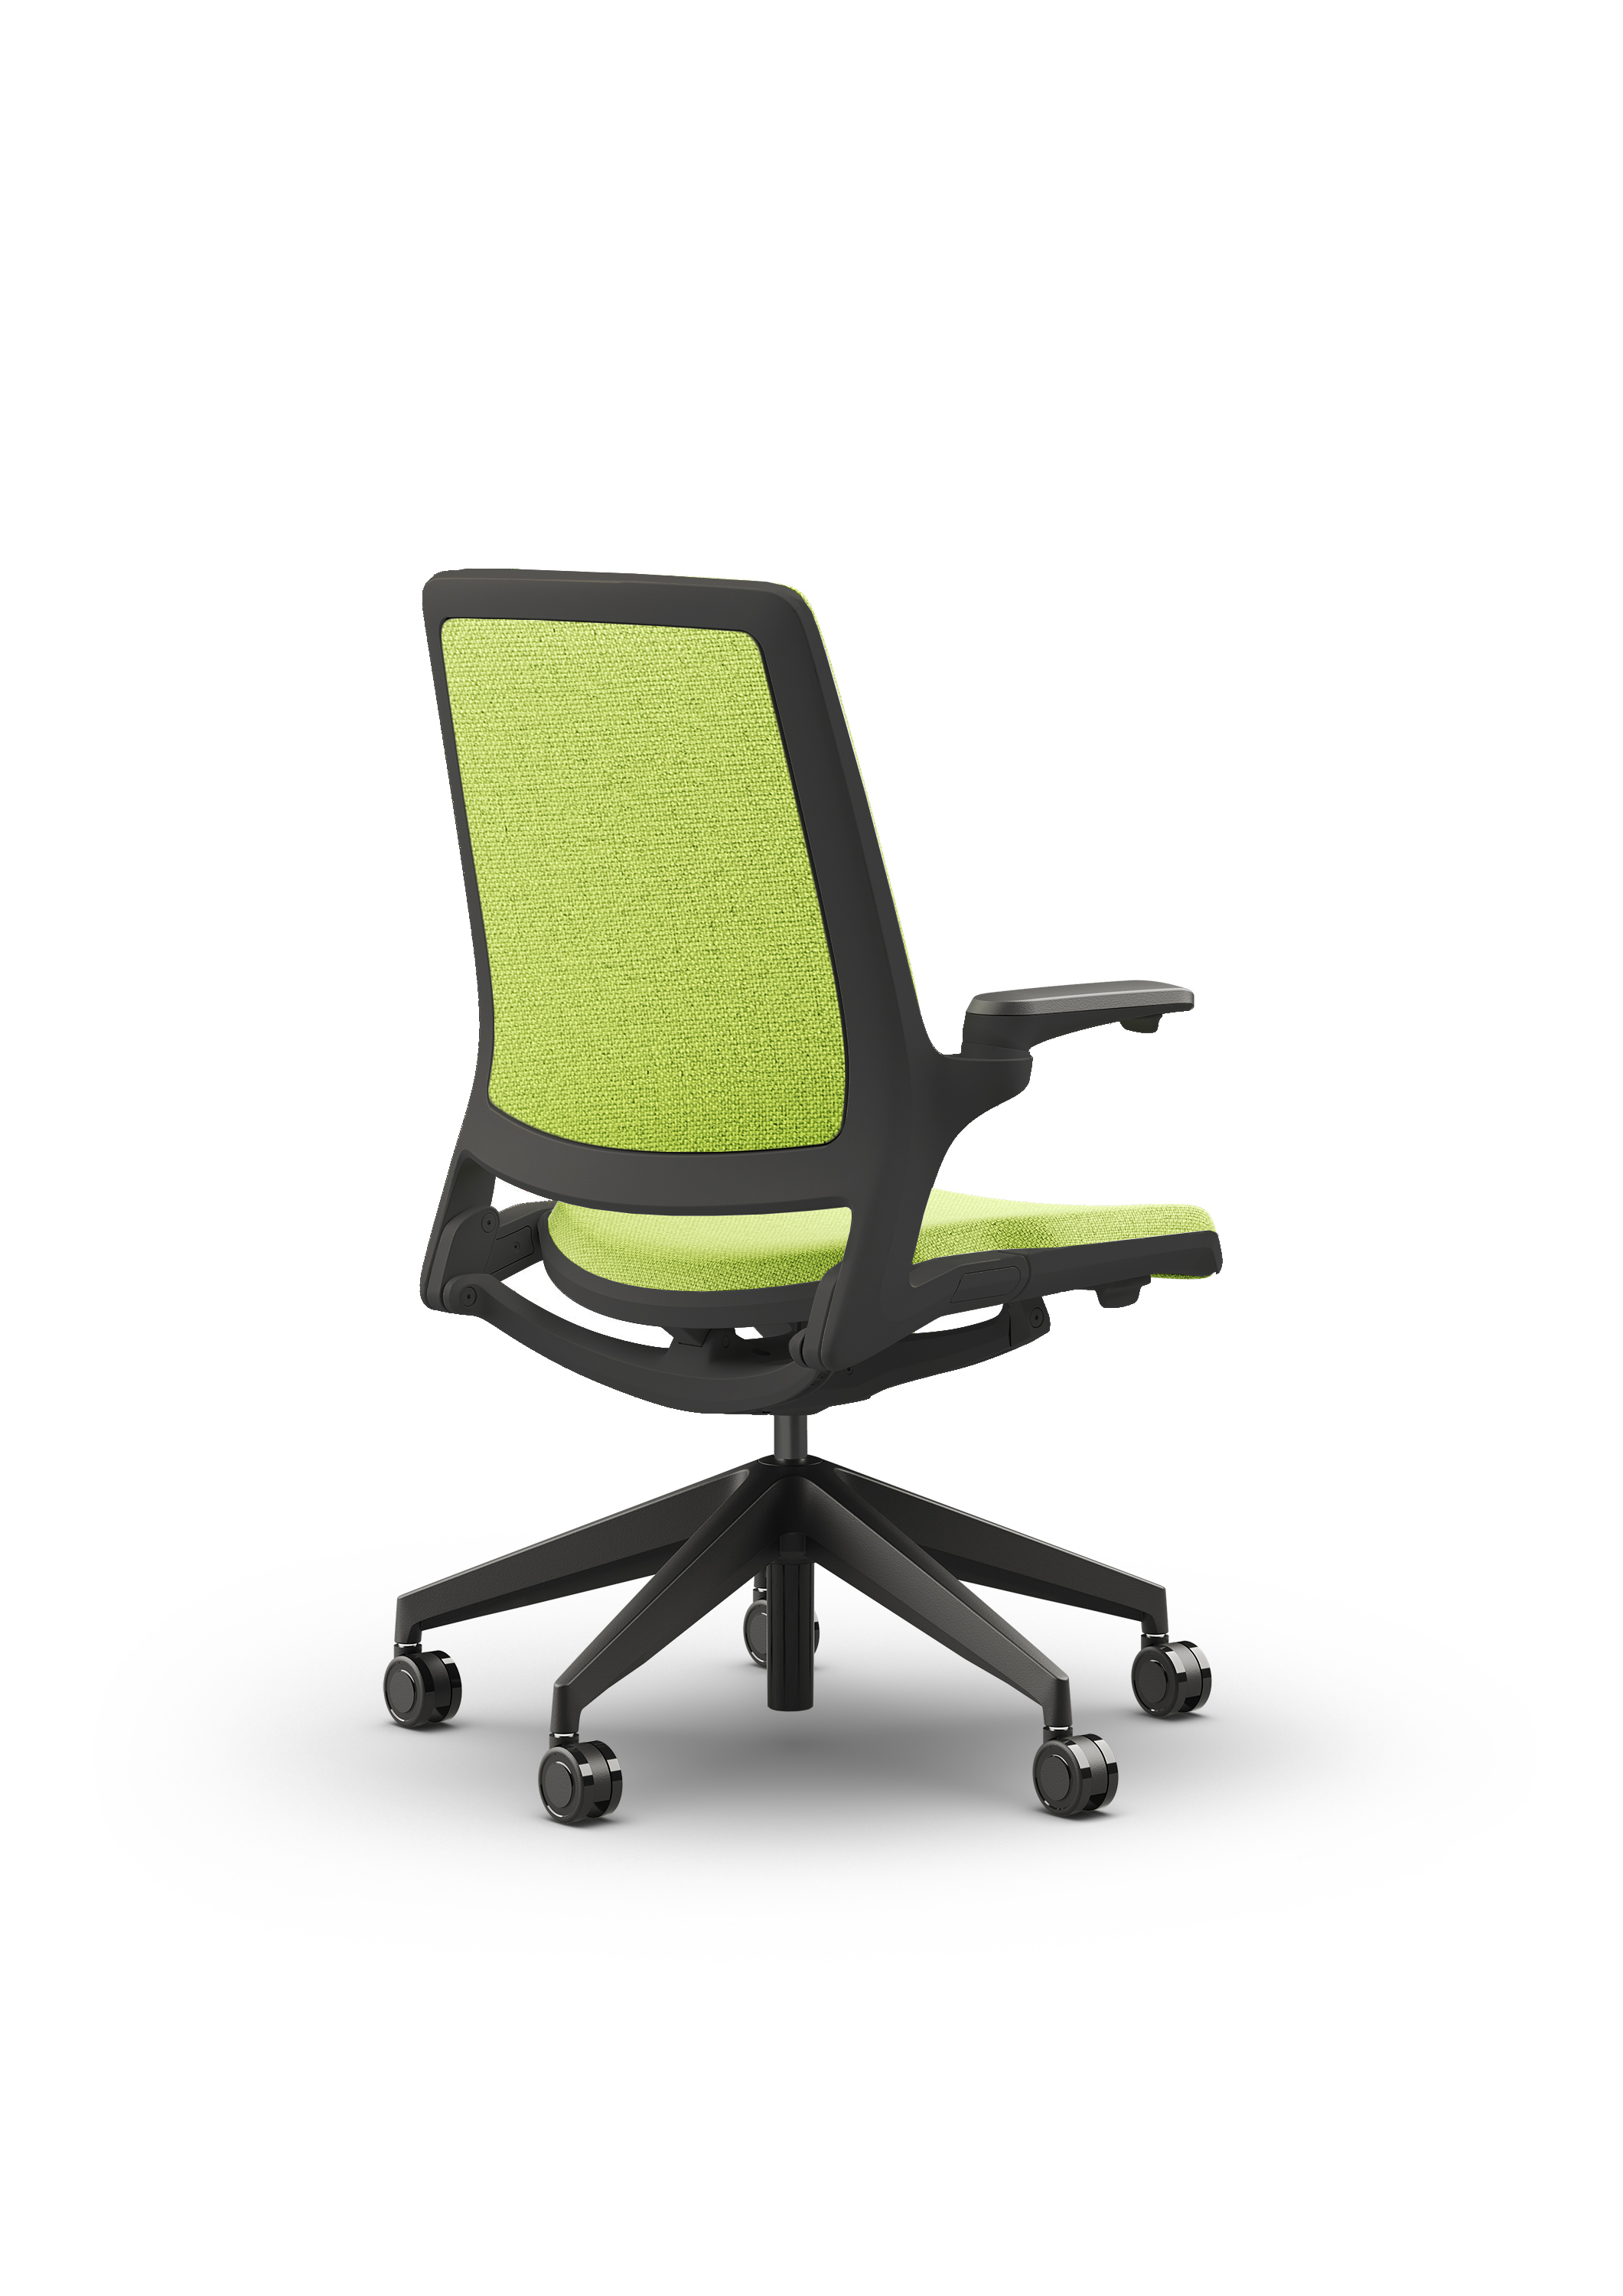 Czarny fotel biurowy z zielonym siedzeniem Ob smart - widoczny po skosie od tyłu zdjęcie 6